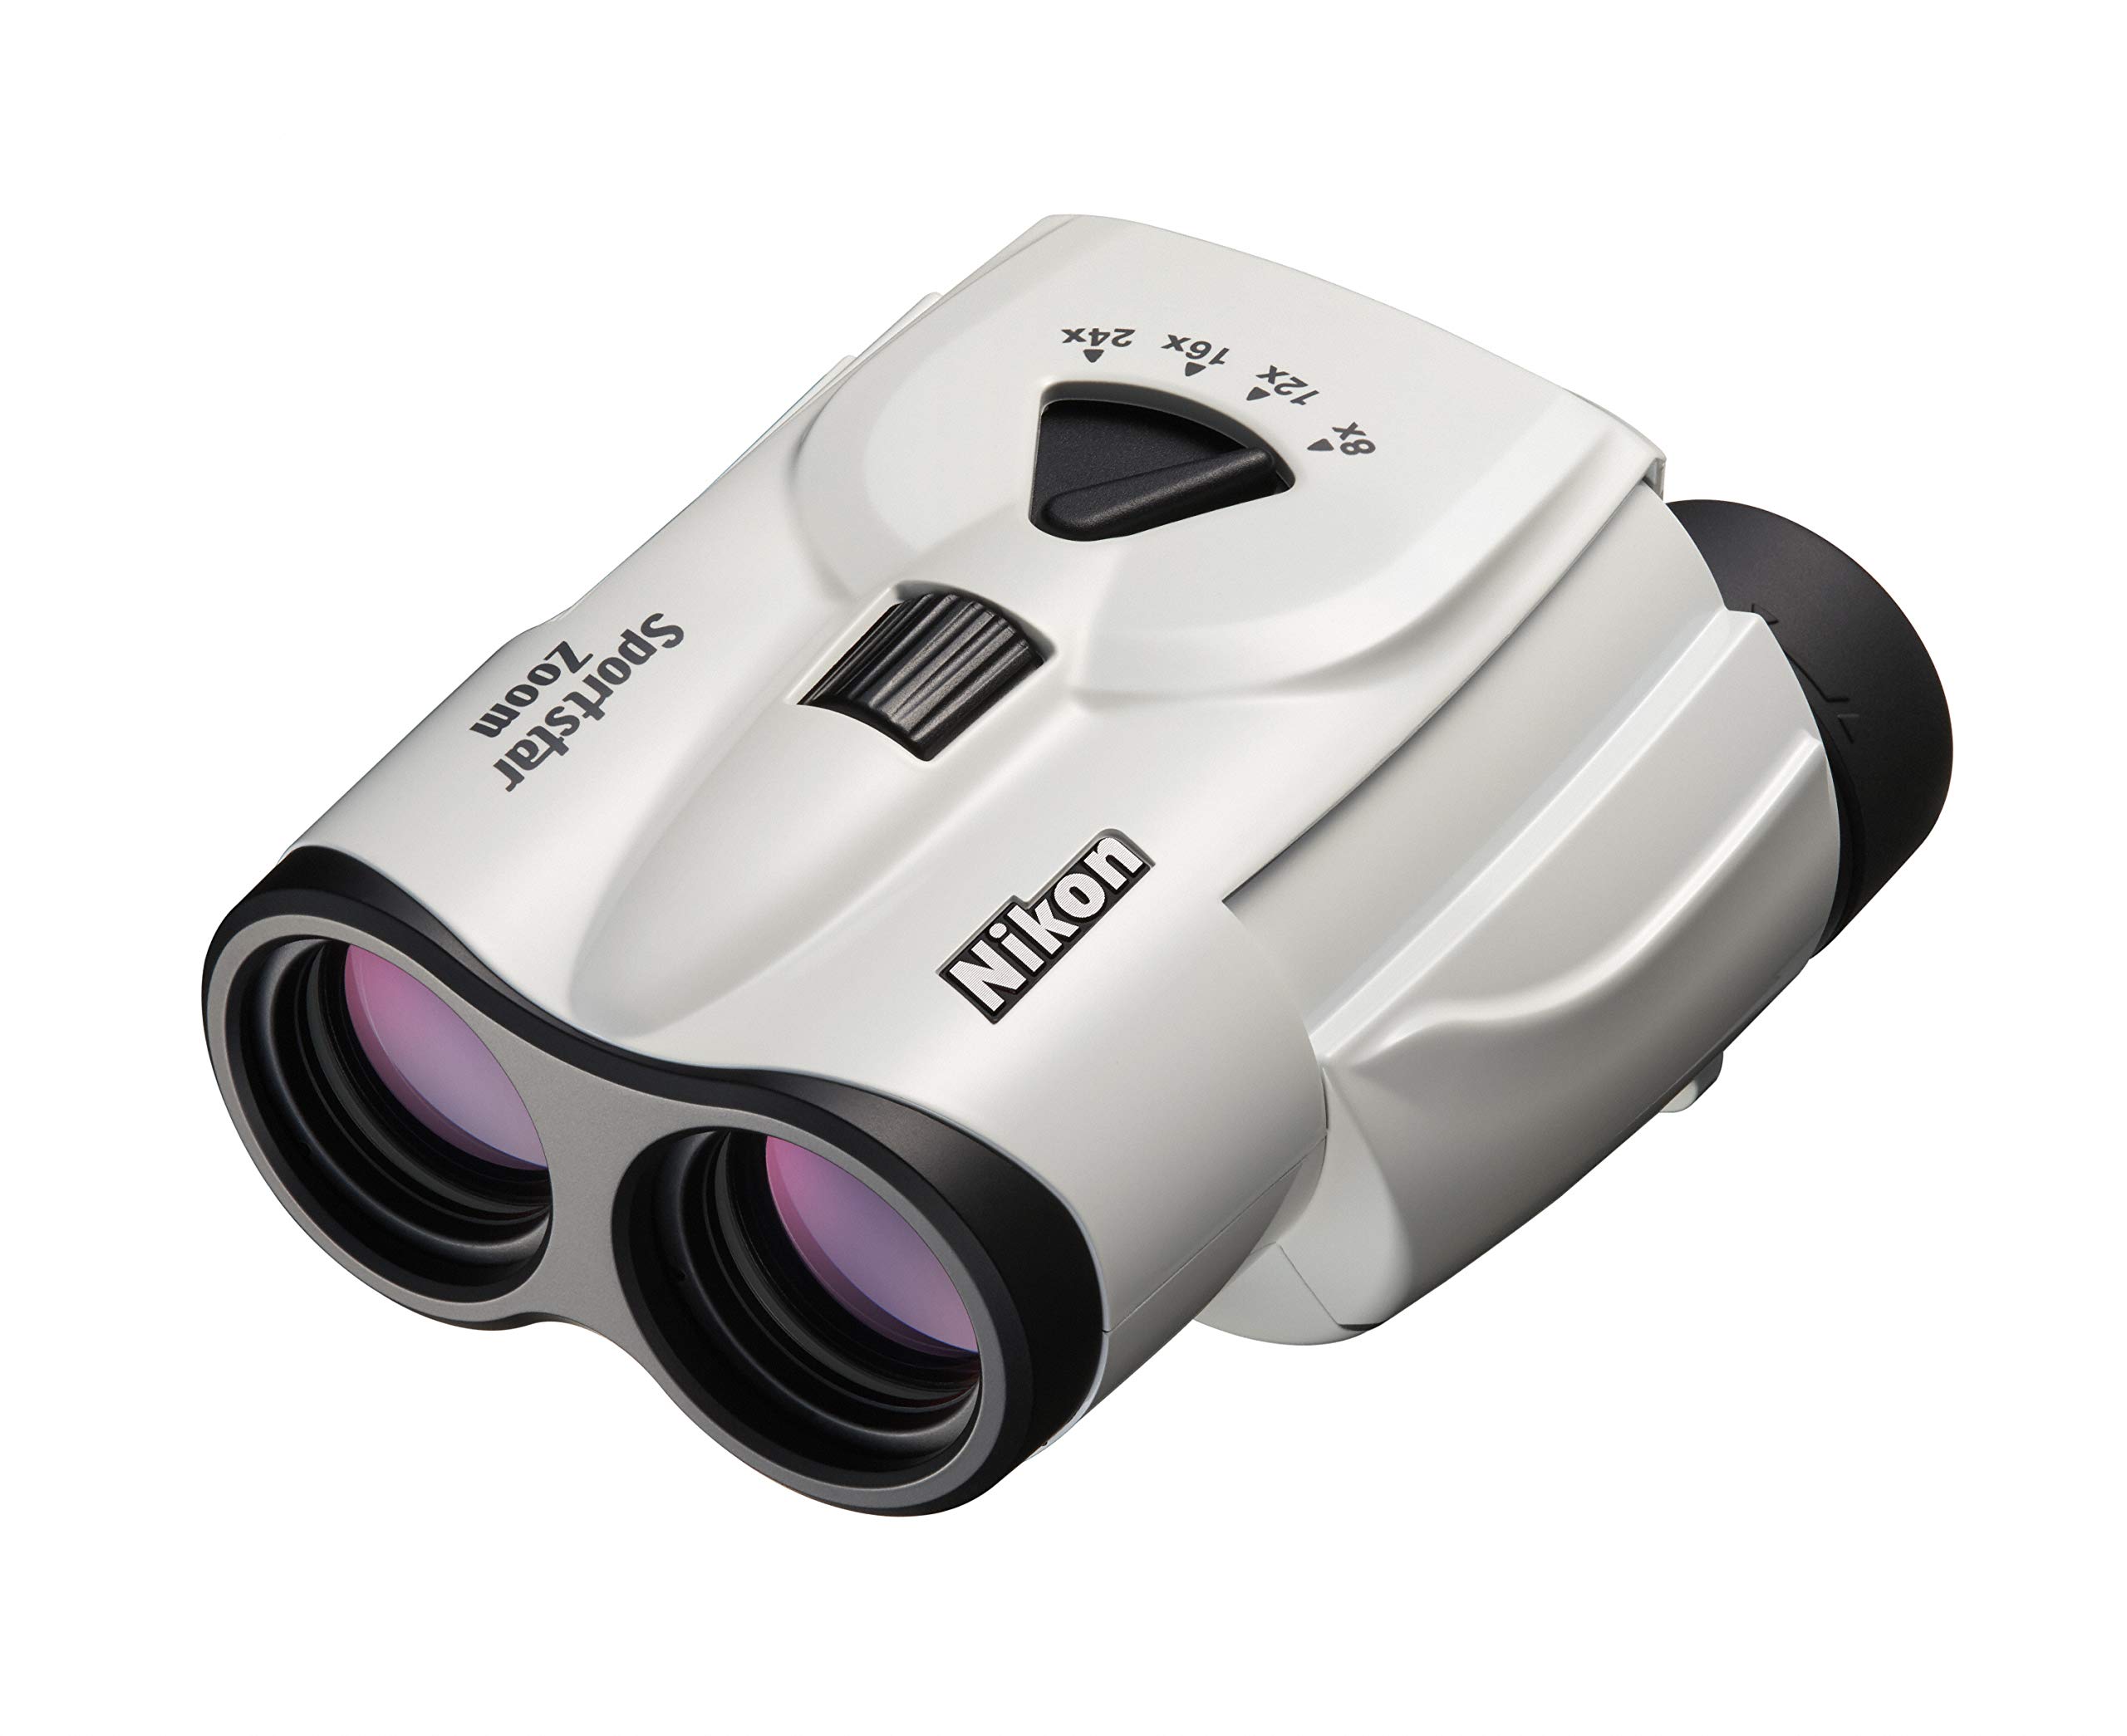 Nikon Sportstar Zoom 8-24x25 Zoom-Fernglas (8- bis 24-Fach, 25mm Frontlinsendurchmesser), Weiß